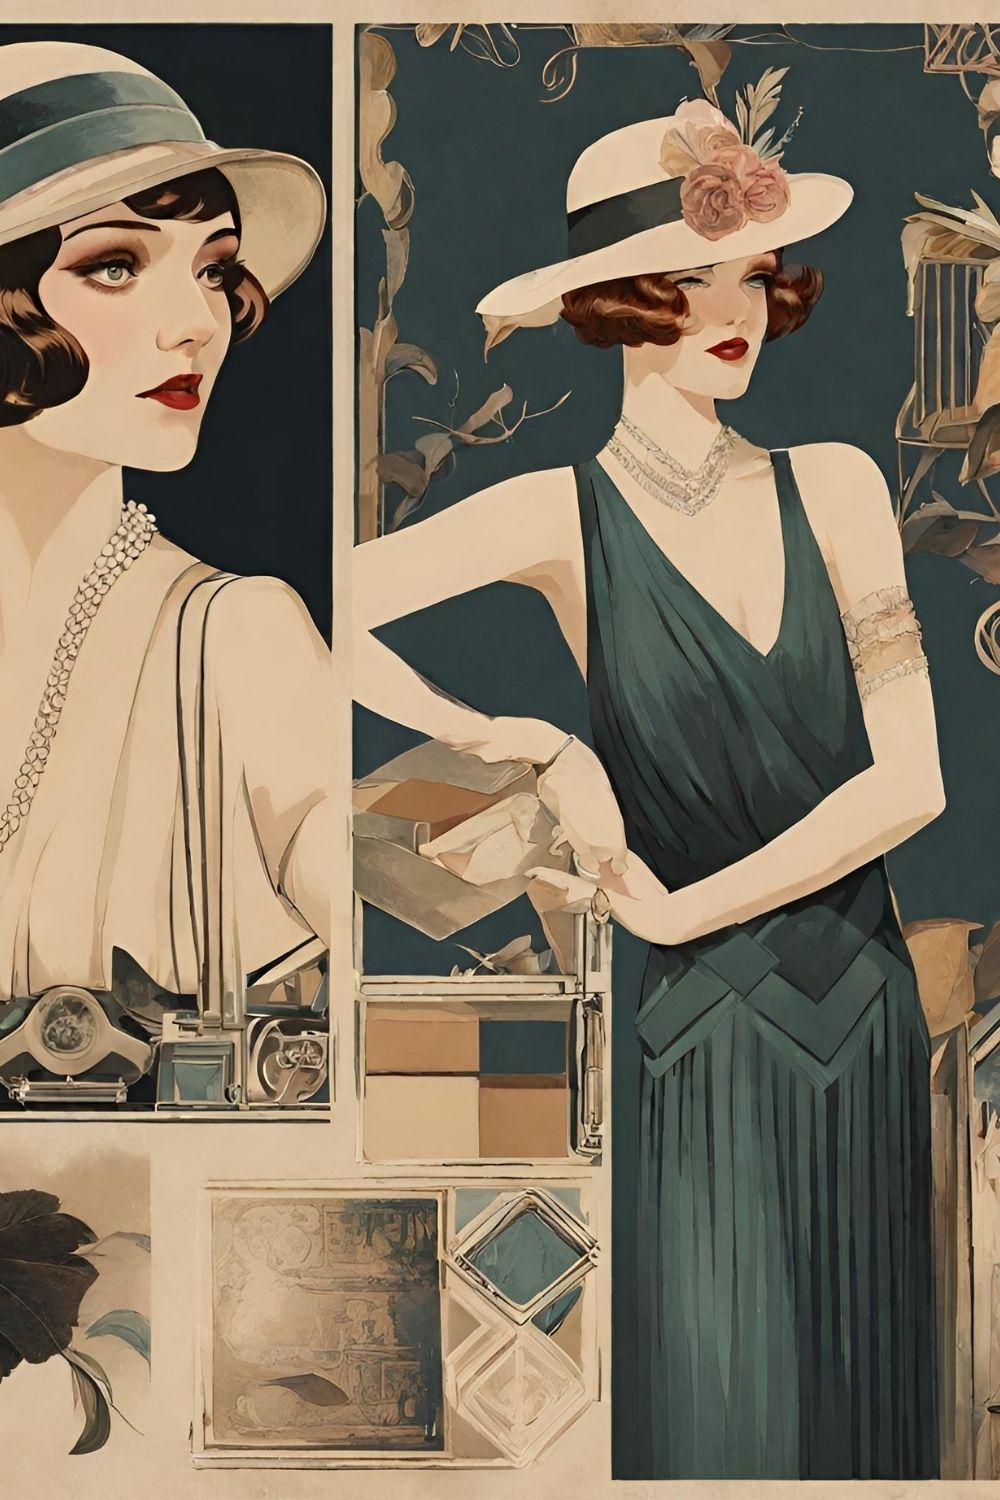 1920s aesthetic